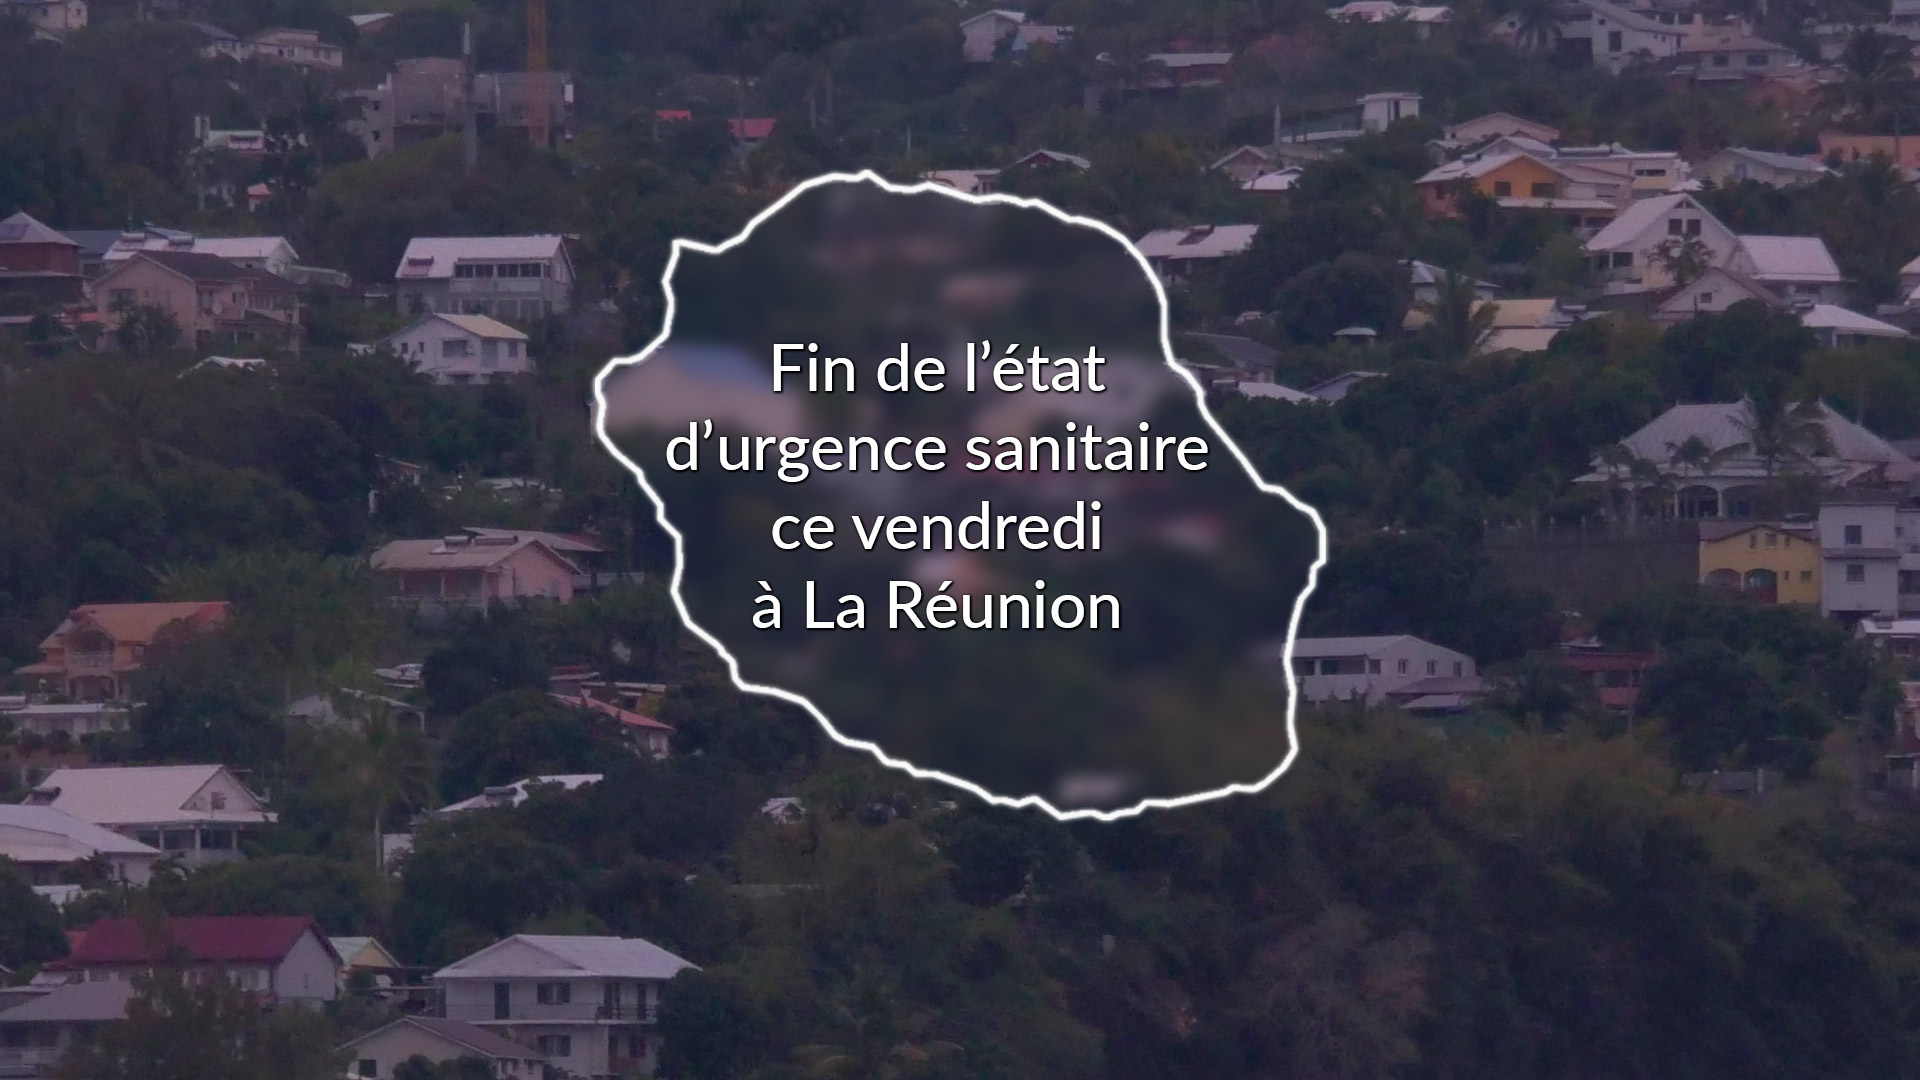 Fin de l'état d'urgence sanitaire à La Réunion